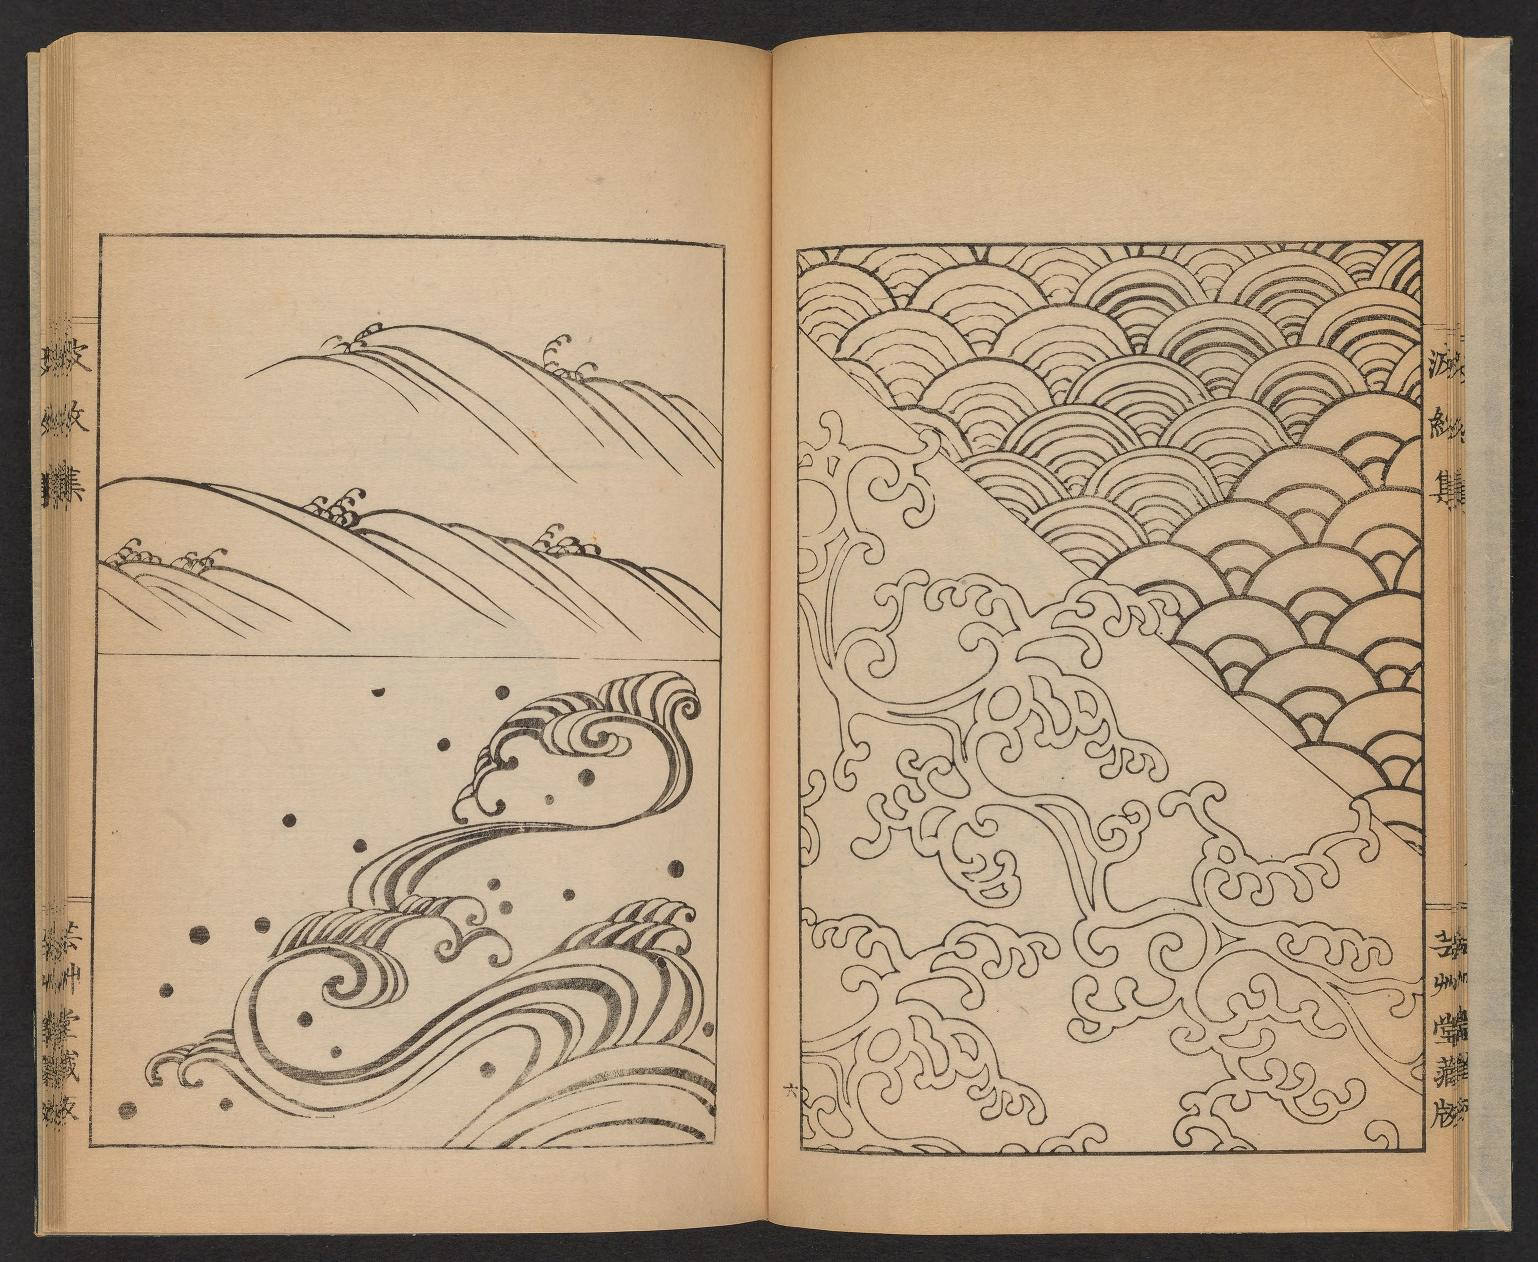 Una guida oltre 100 anni fa insegnava agli artisti giapponesi a disegnare le onde è ora scaricabile online. Gratis